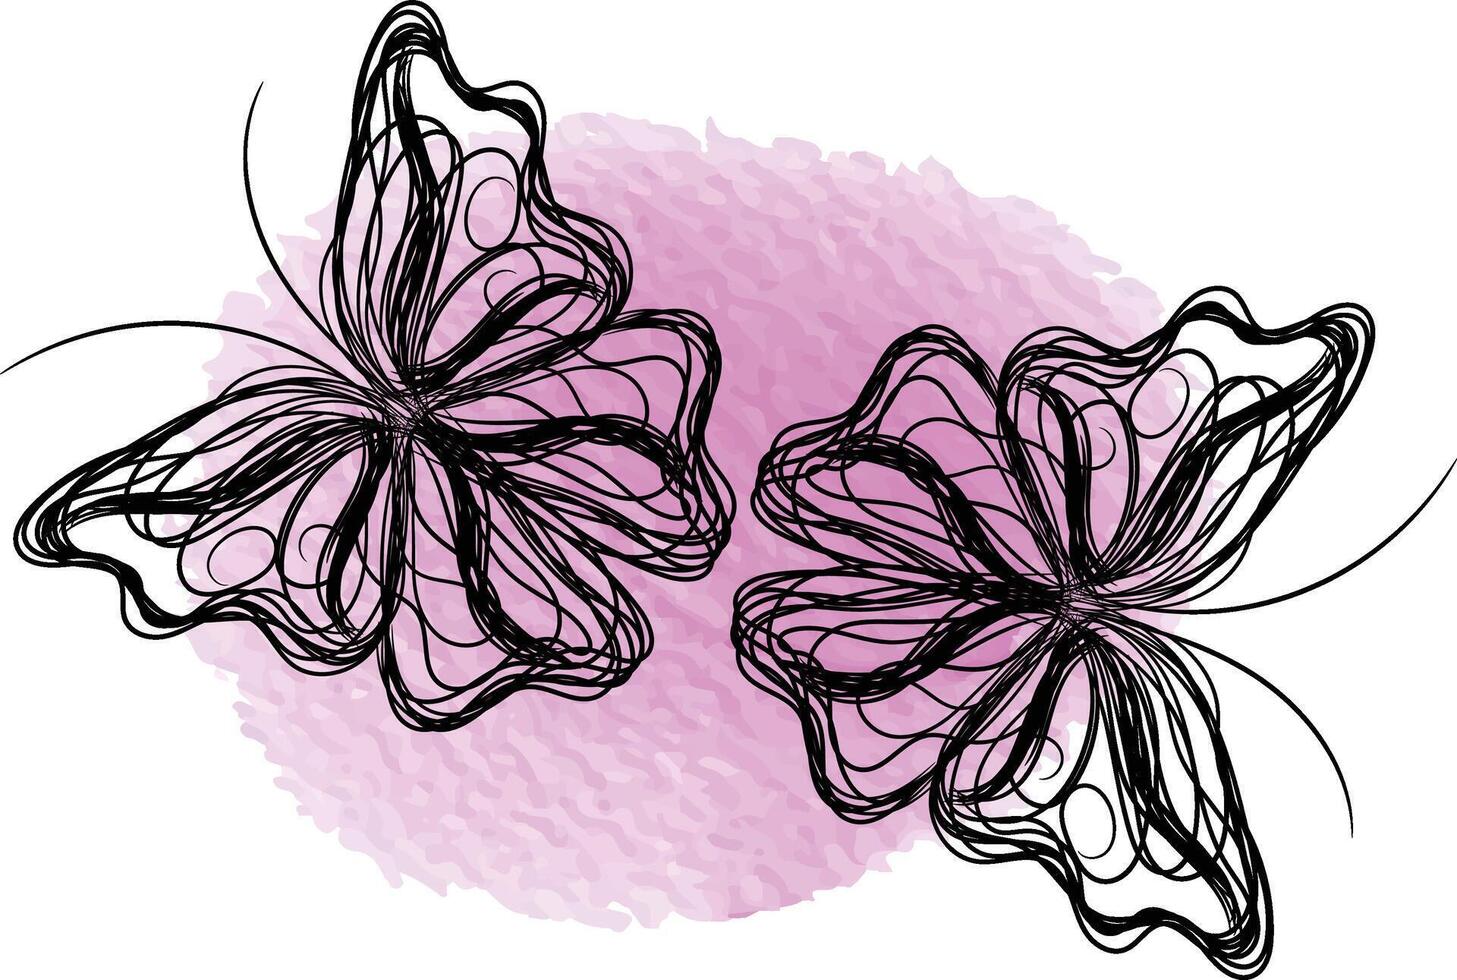 Schmetterlingsumriss mit gezeichneter Detailsammlung vektor